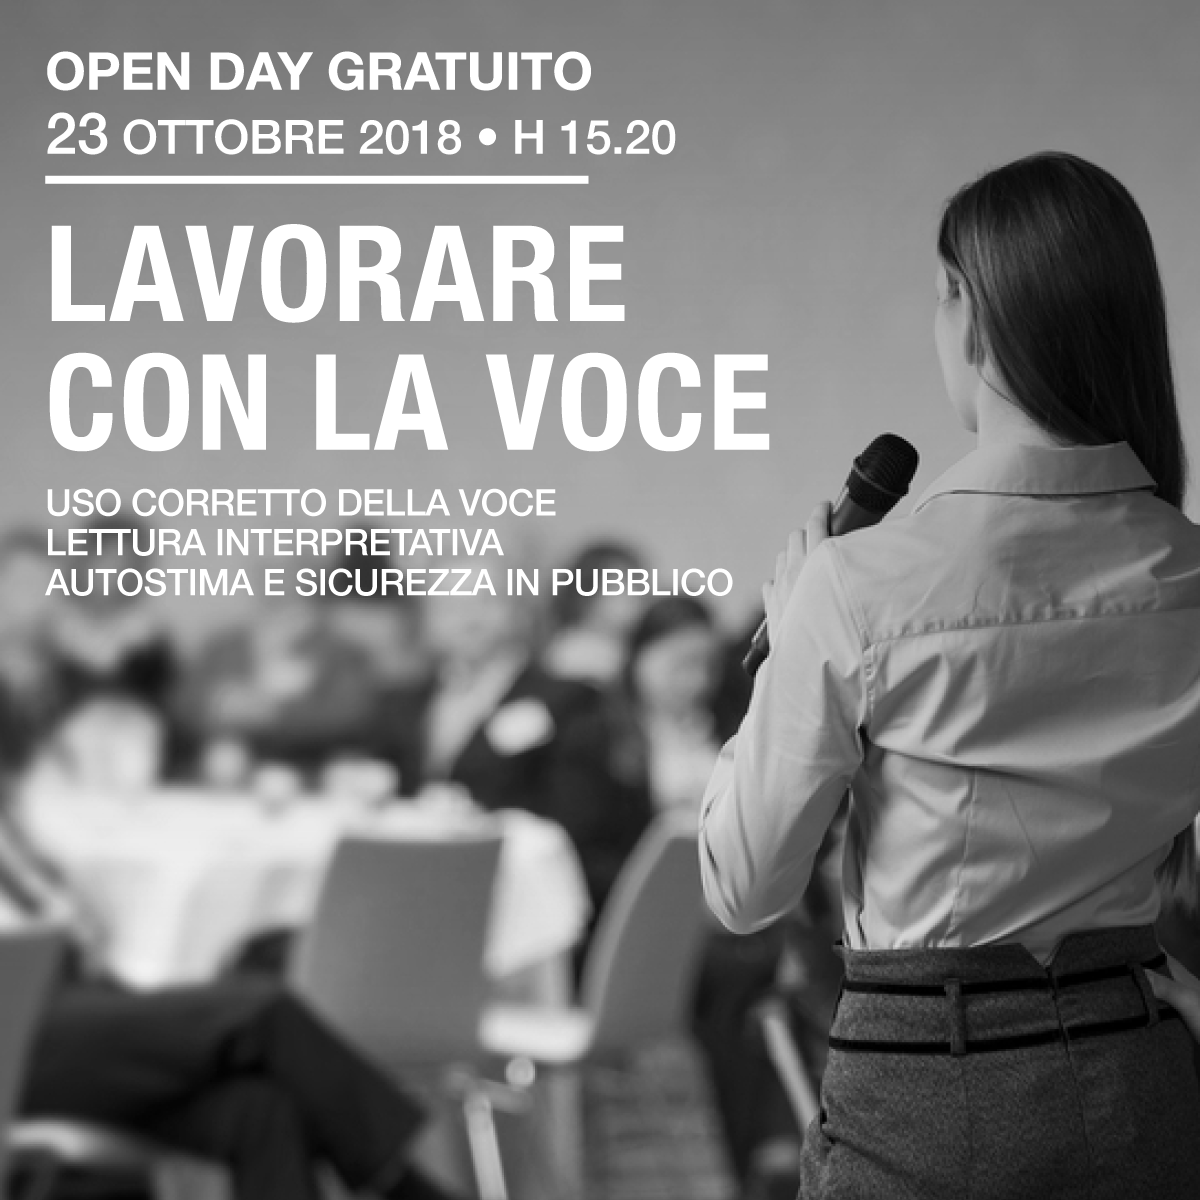 Lavorare con la voce - open day gratuito